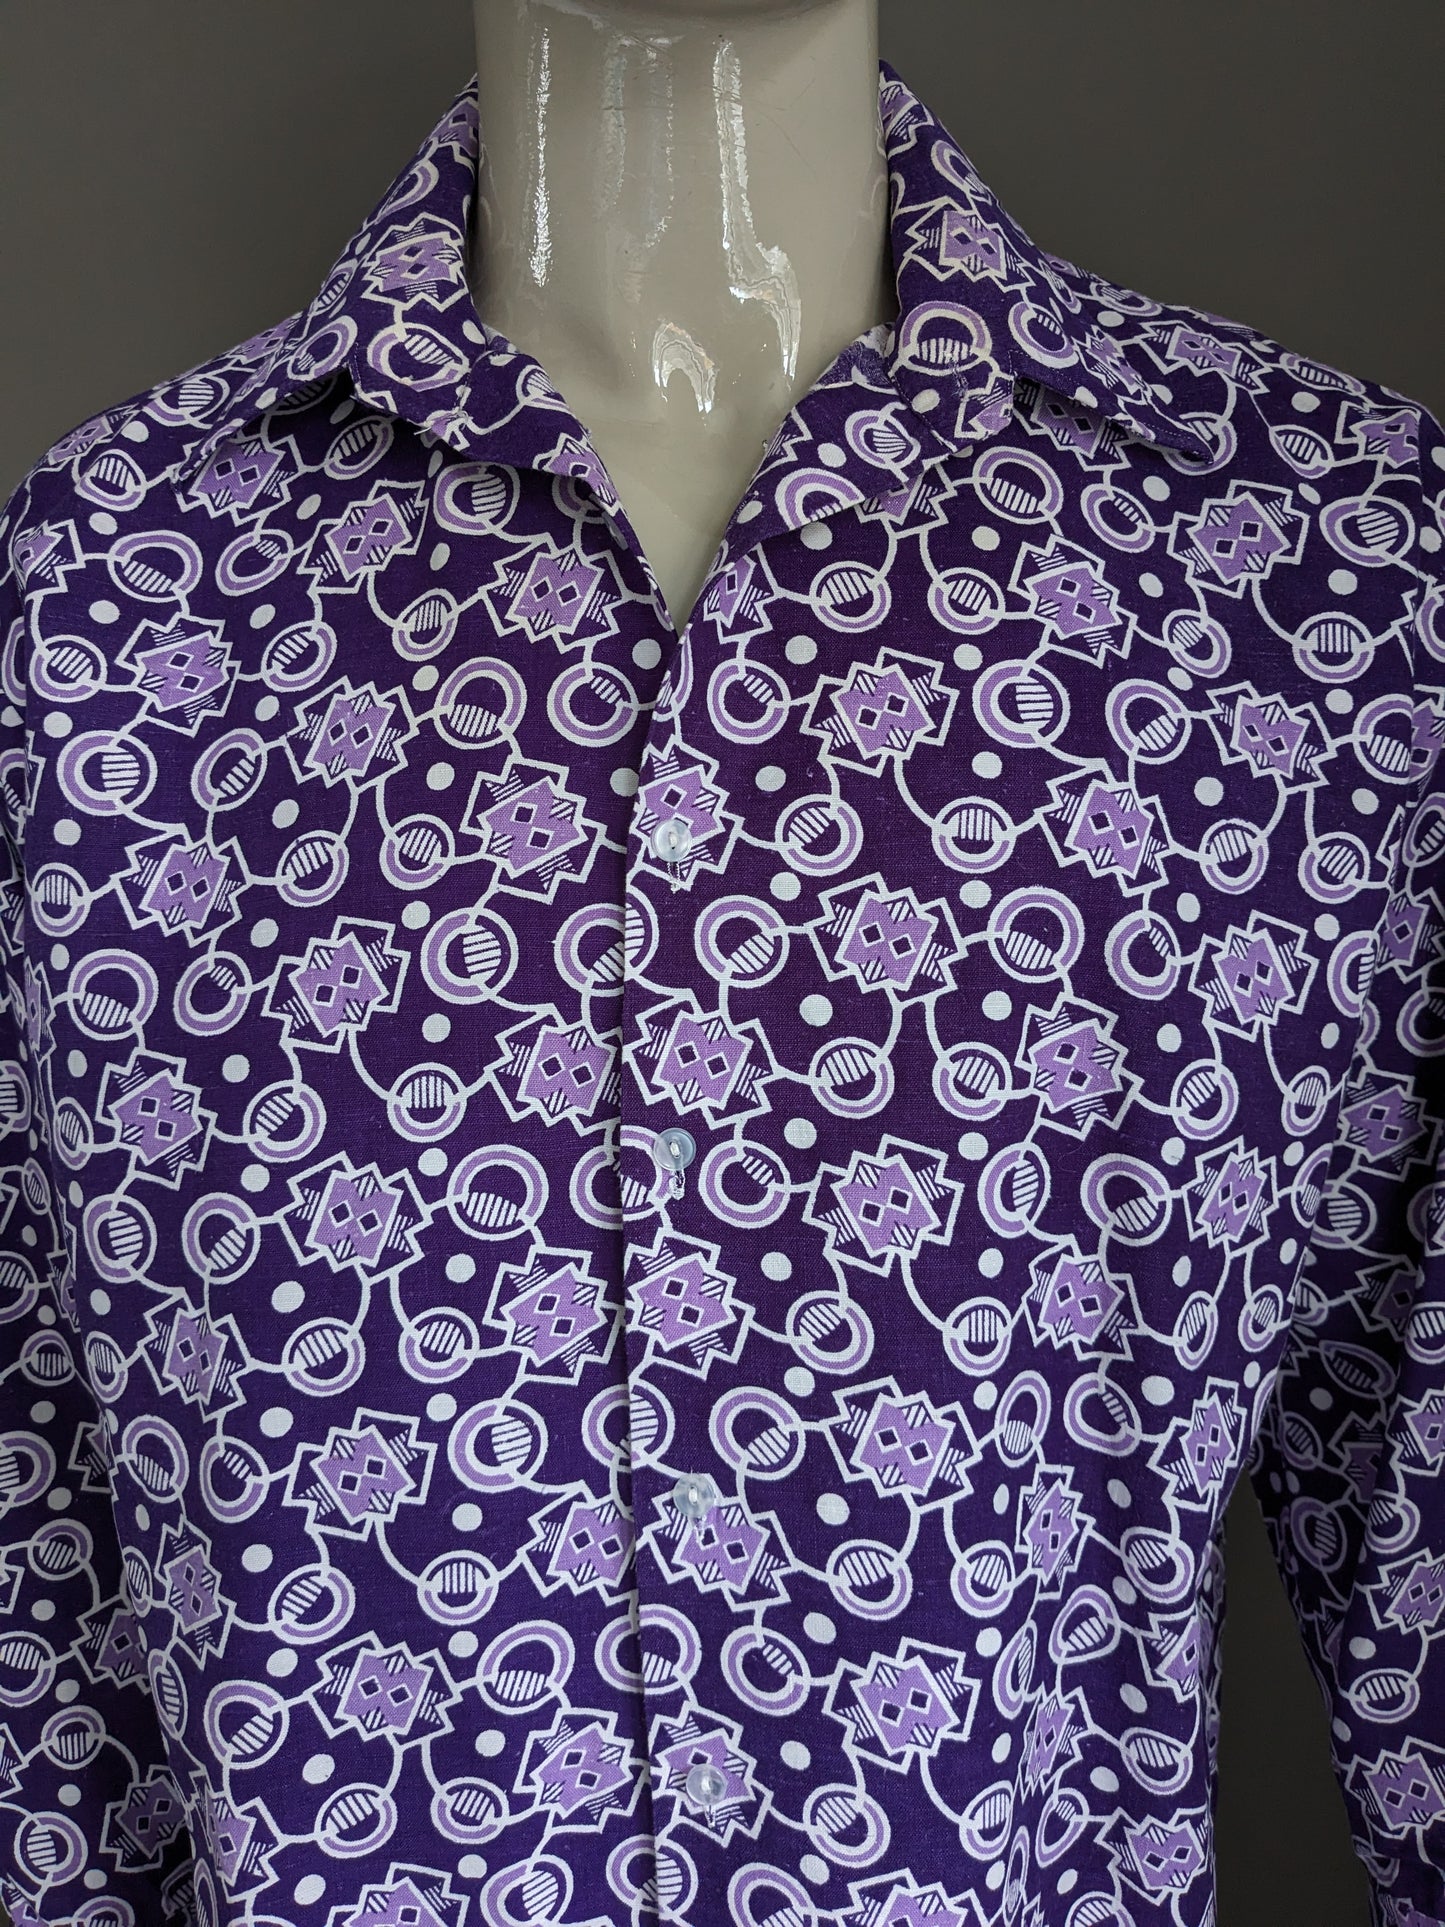 Camisa de loto vintage. Estampado blanco púrpura. Tamaño 2xl / xxl - 3xl / xxxl.